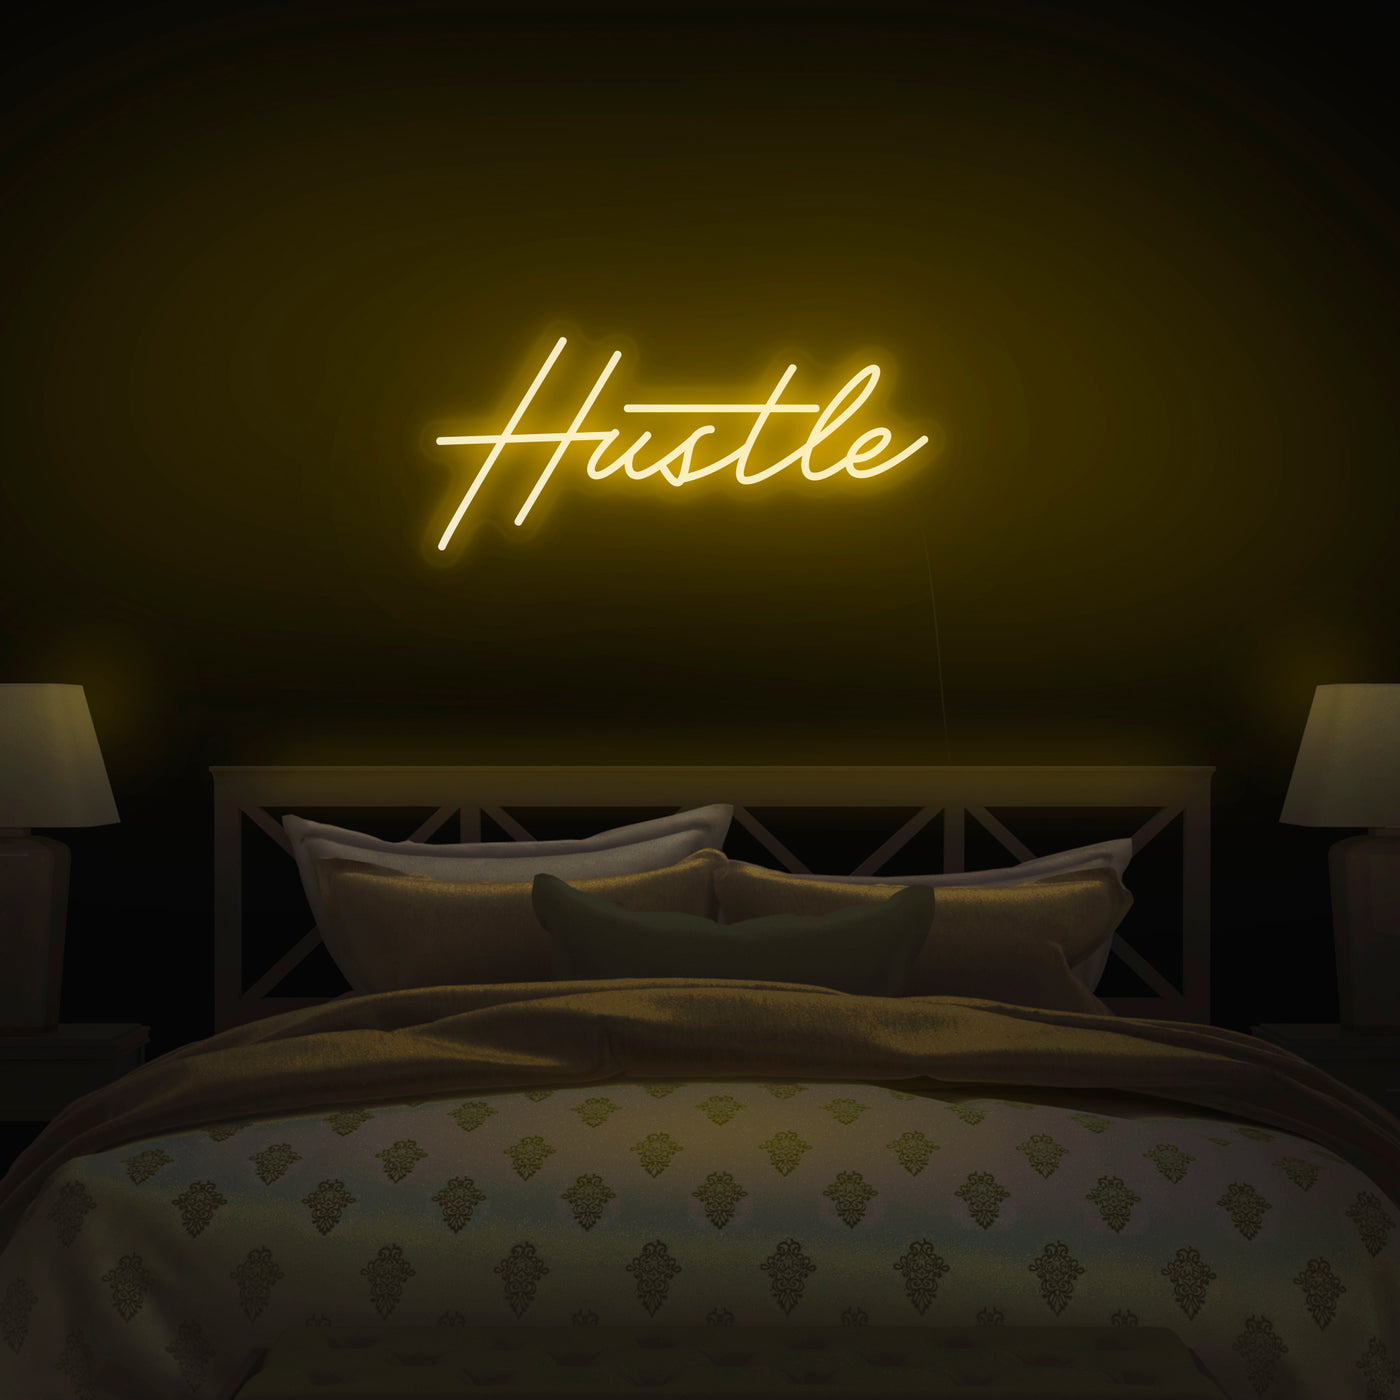 'Hustle' V2 Neon Sign - Nuwave Neon